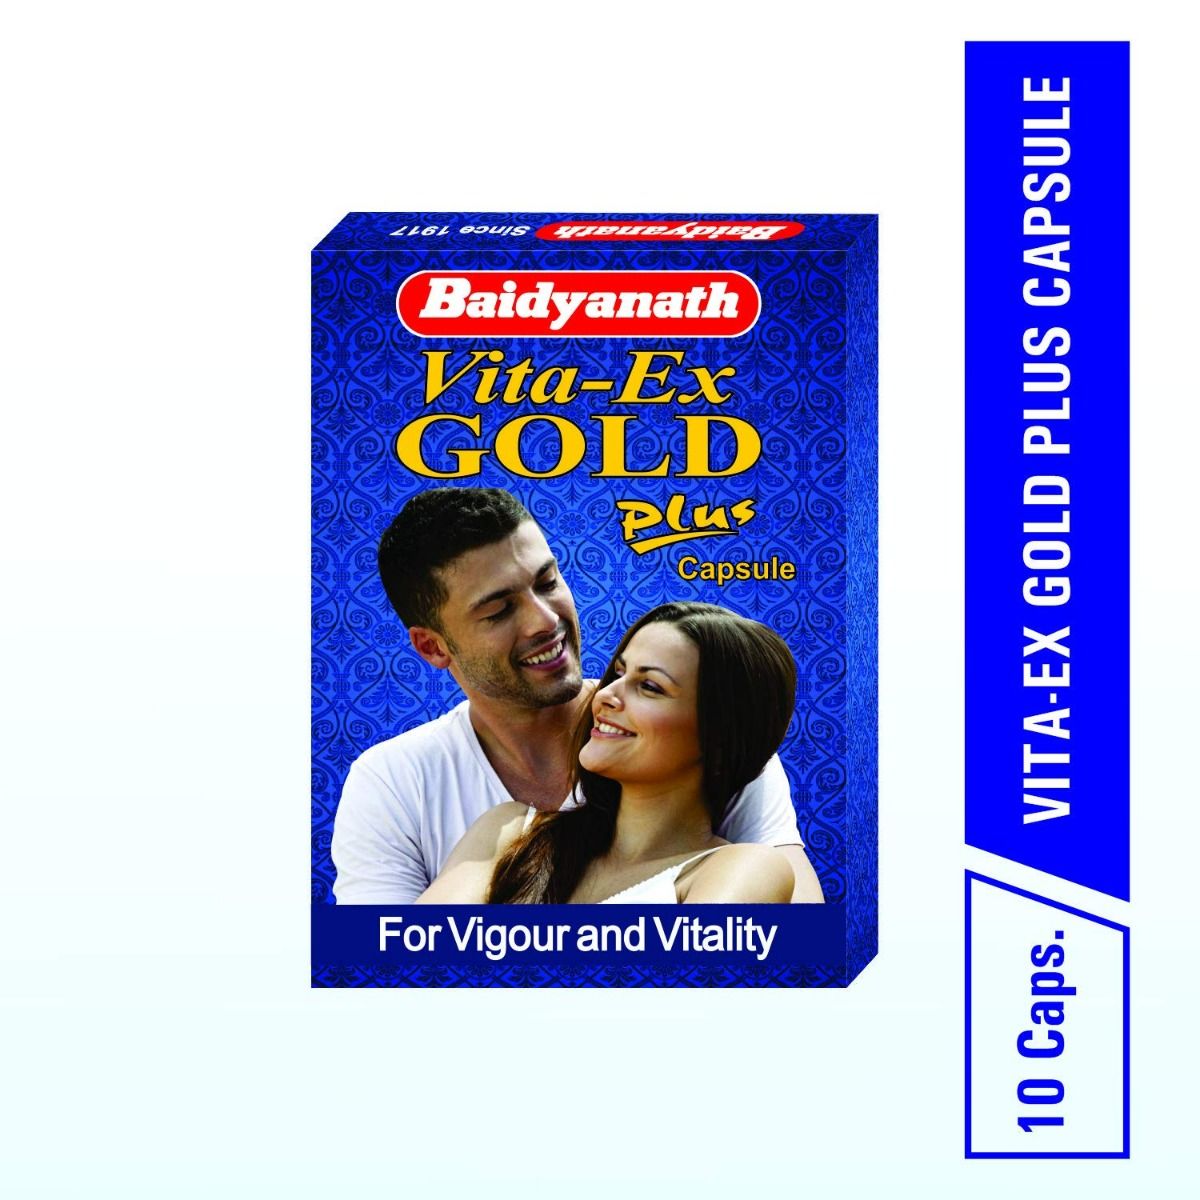 Buy Baidyanath Vita-Ex Gold Plus Capsules 10's Online